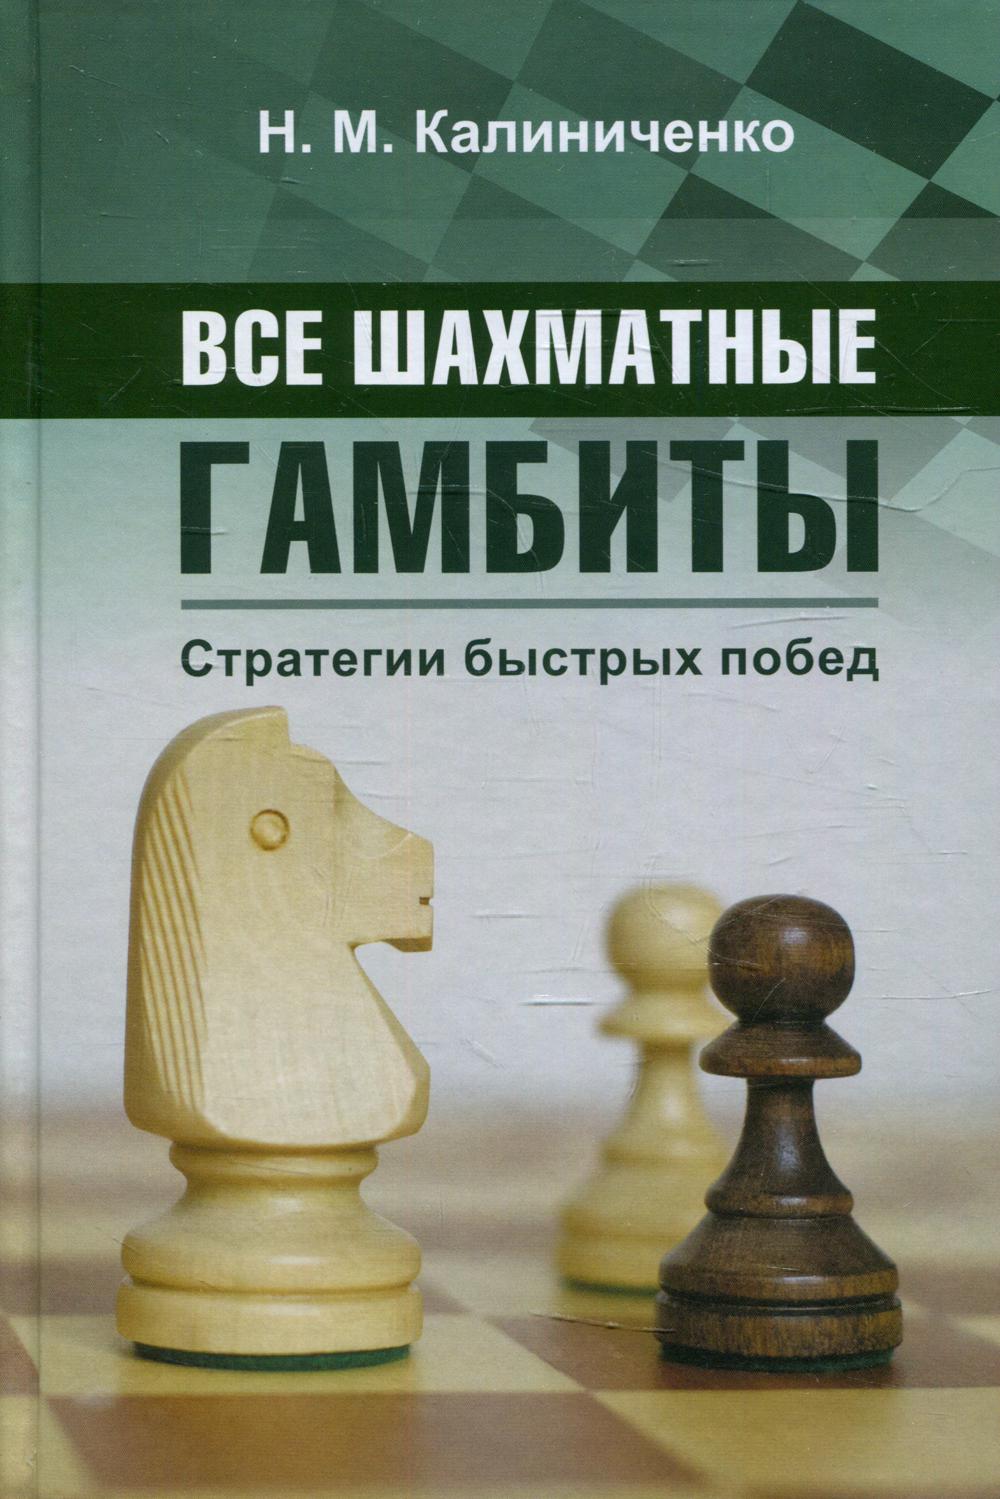 Книга Все шахматные гамбиты. Стратегии быстрых побед